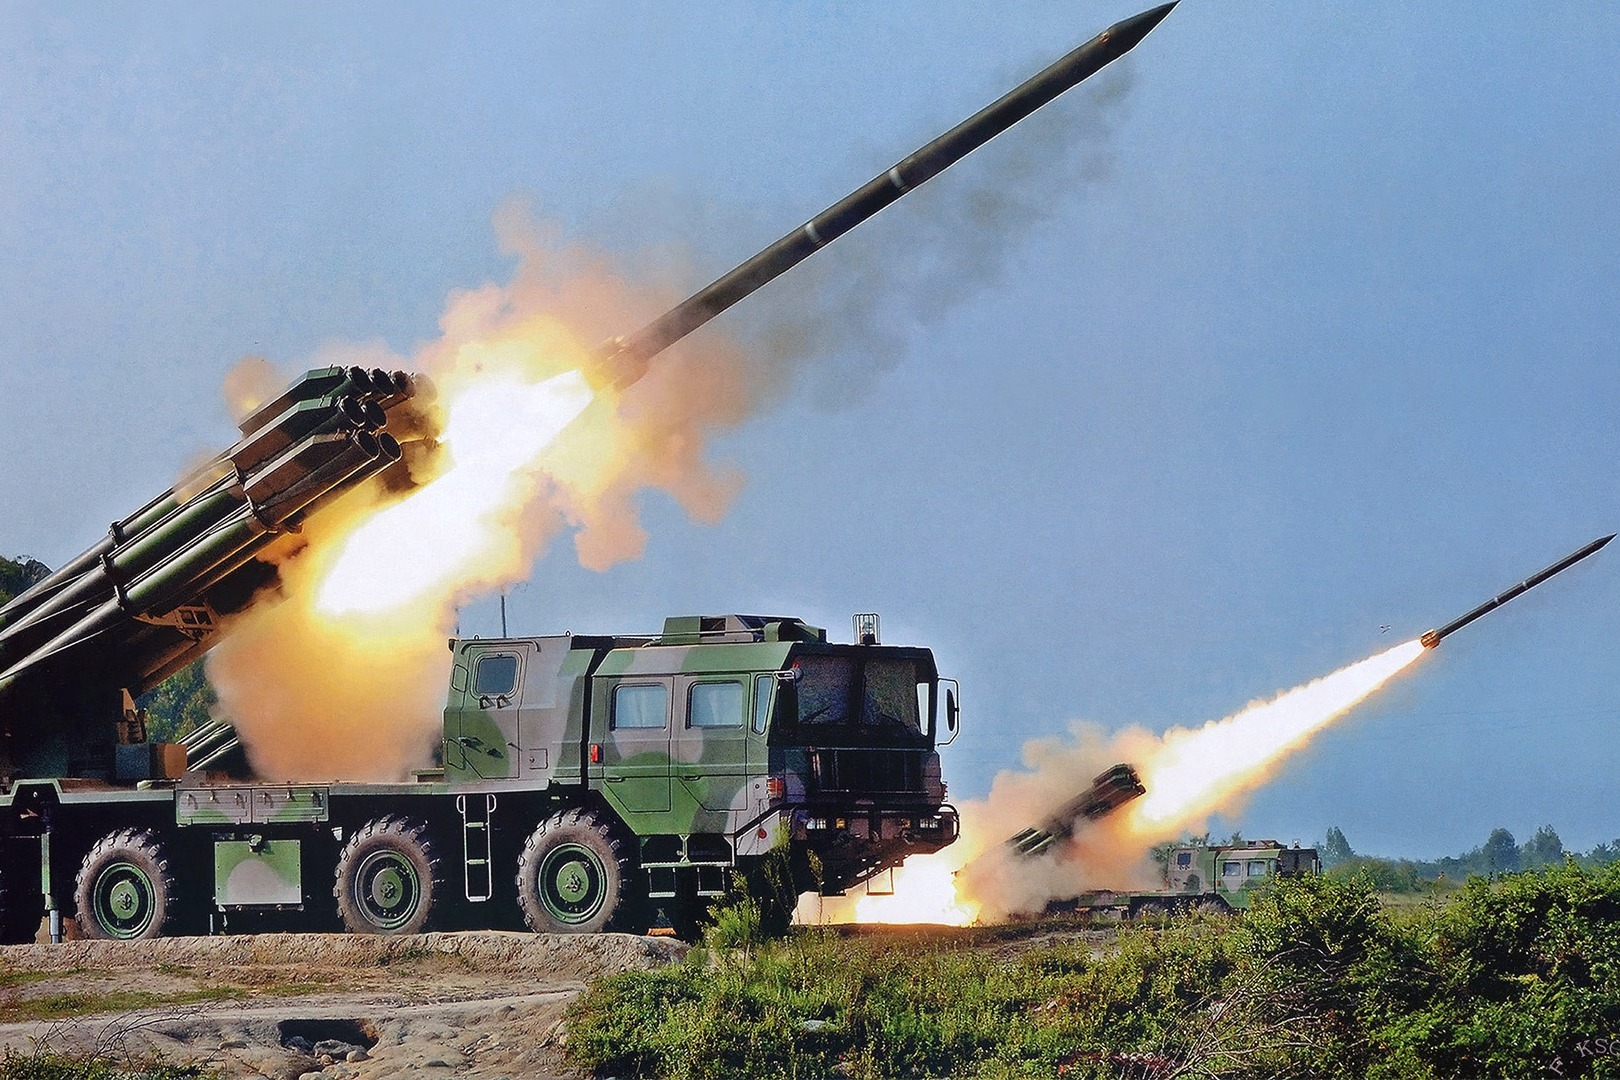 中国卫士远程火箭炮射程世界第一 销售量没有一个国家可比